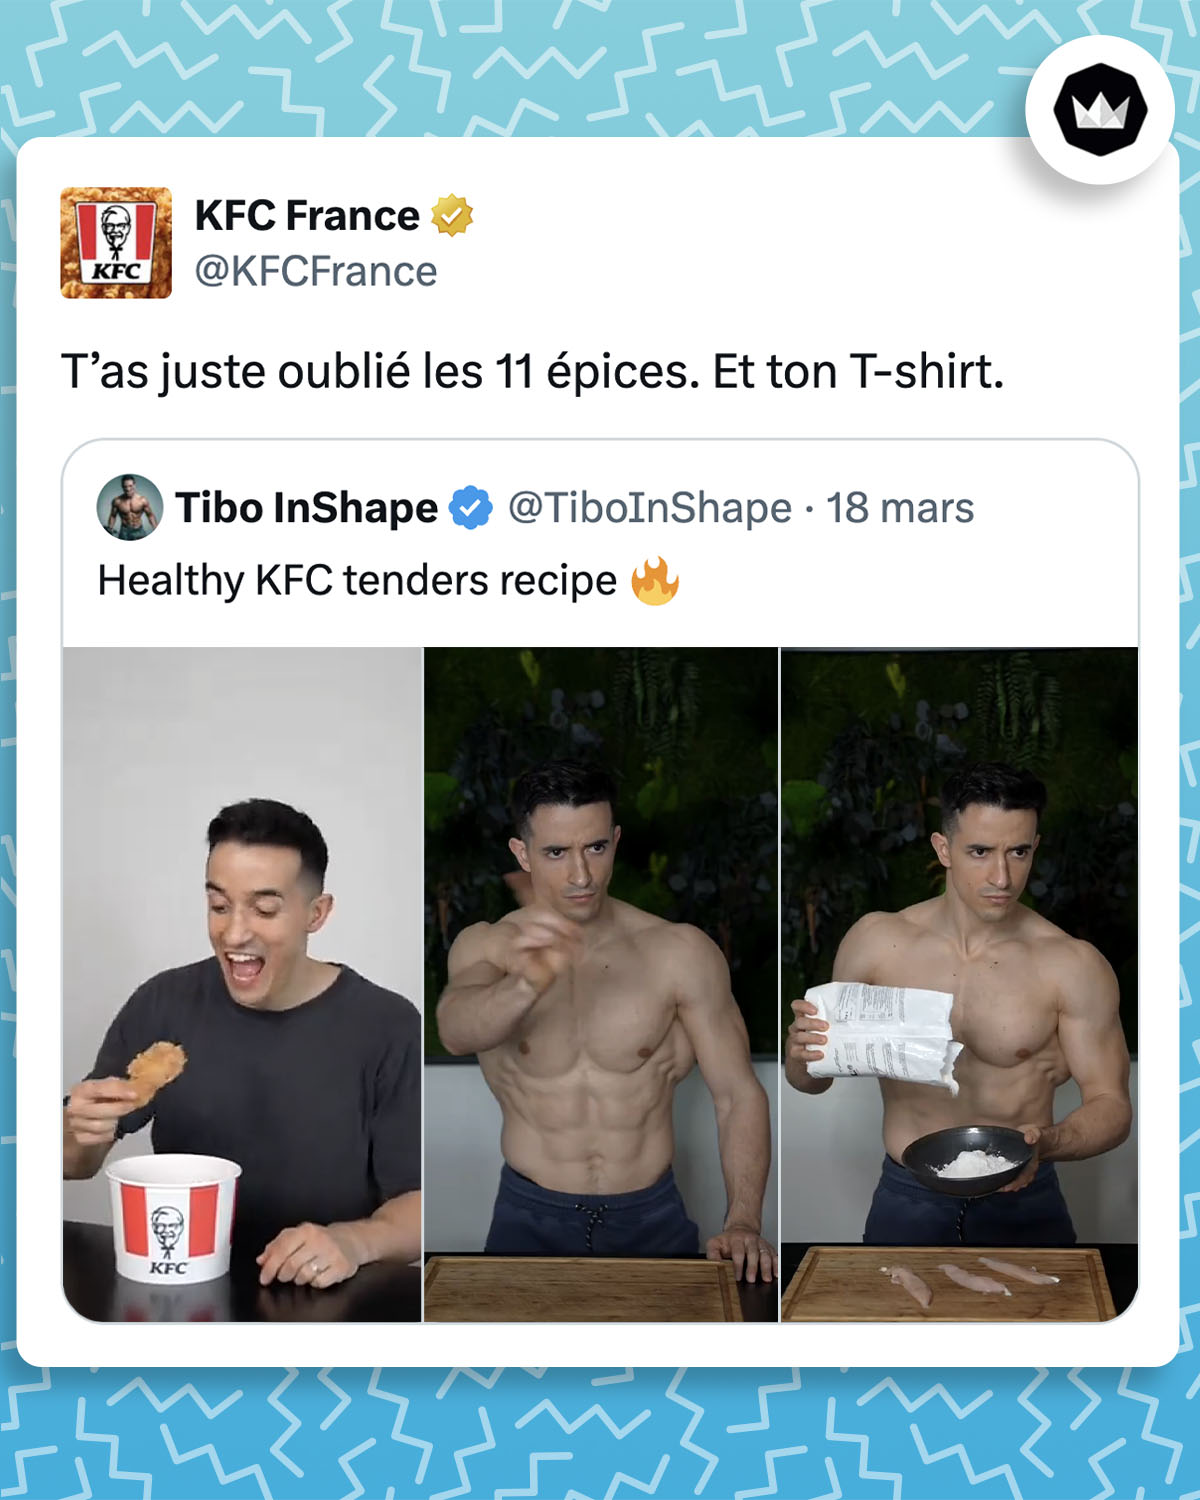 @TiboInShape :
"Healthy KFC tenders recipe 🔥" accompagné d'une vidéo où il met de côté des tenders de KFC pour montrer comment les cuisiner lui-même.
@KFCFrance :
T’as juste oublié les 11 épices. Et ton T-shirt.